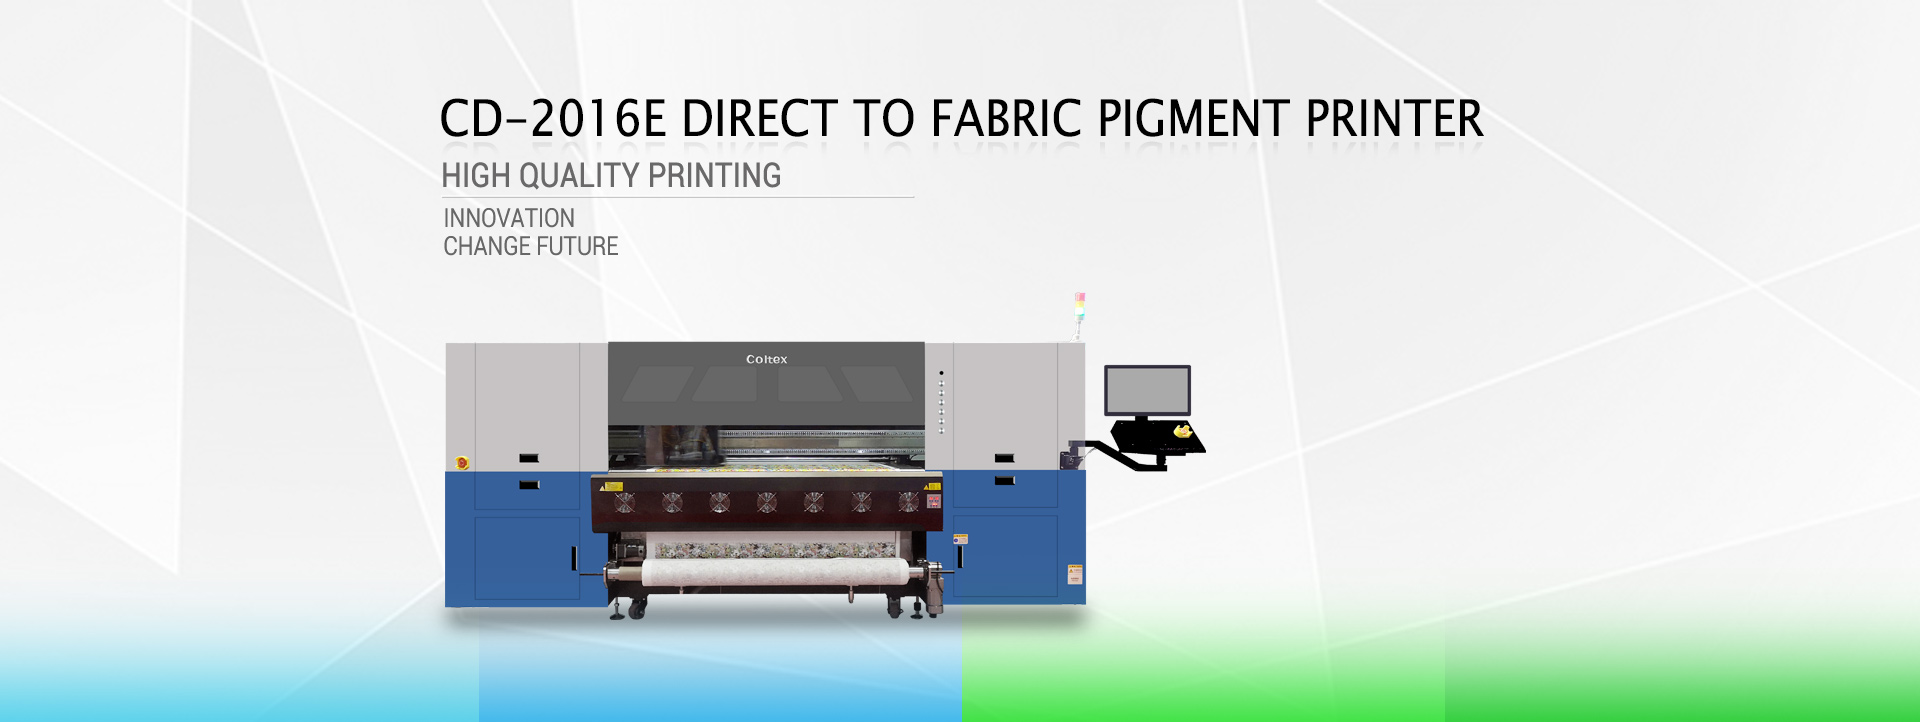 Xenons Coltex Direct to fabric pigment printer